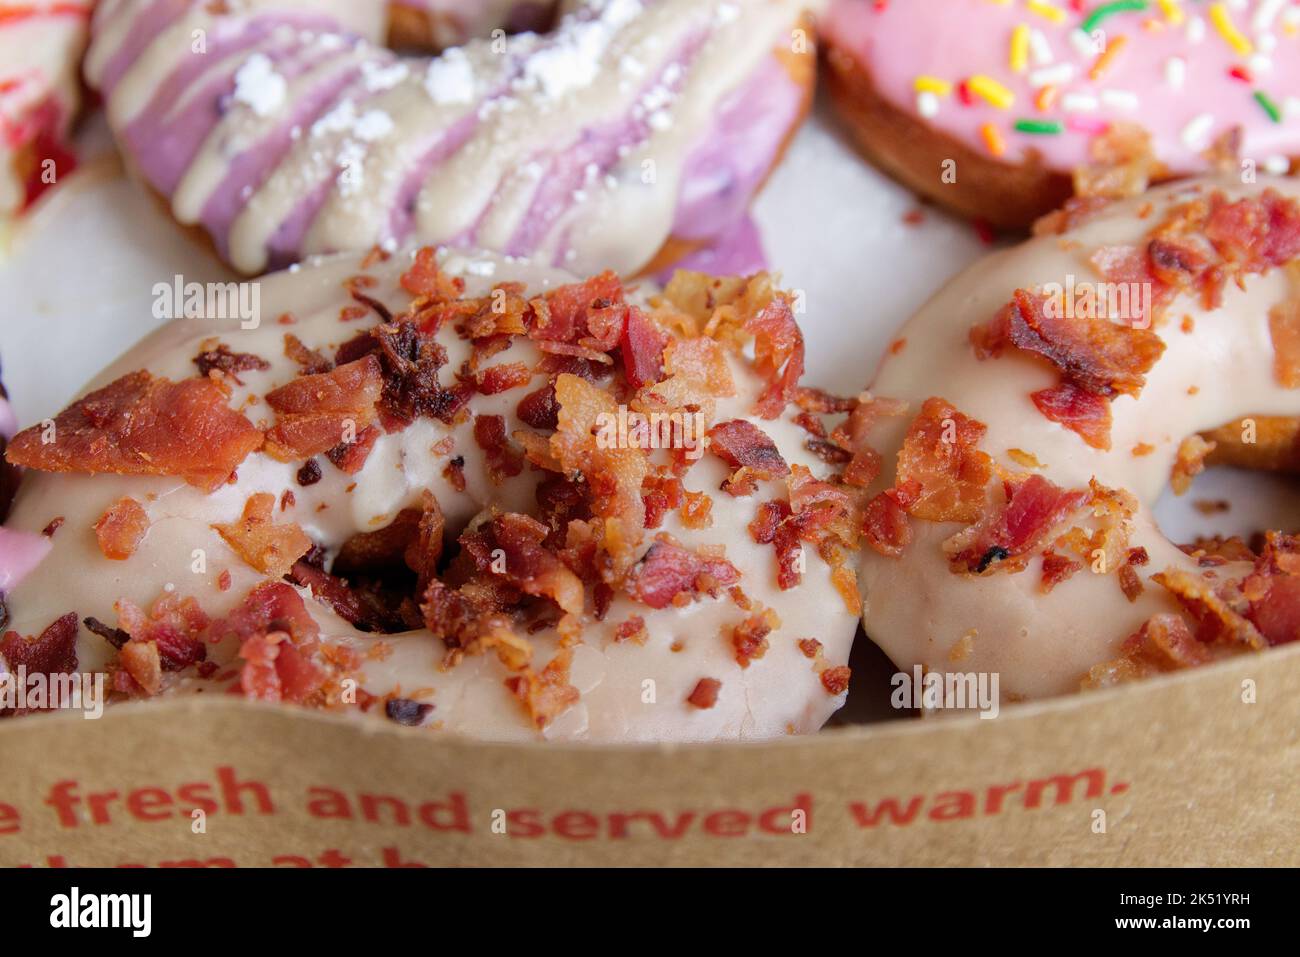 Immagine di ciambelle assortite in una scatola con la guarnizione di bacon, glassato rosa, e spruzzare ciambelle. Foto Stock